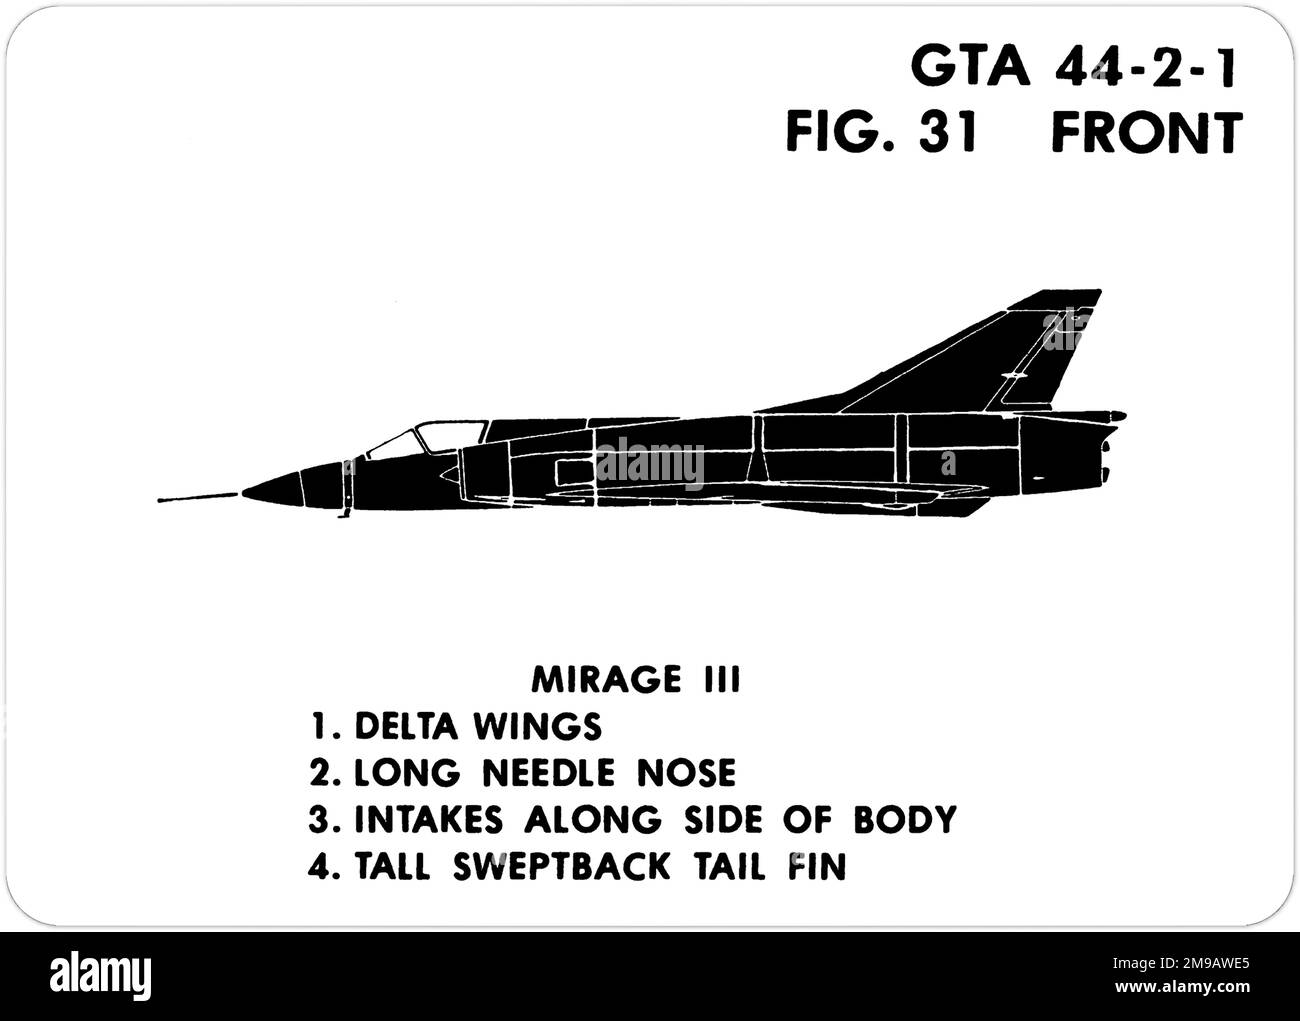 Le Mirage IIIC de Dassault. Il s'agit de l'une des séries de Graphics Training AIDS (GTA) utilisées par l'armée des États-Unis pour former leur personnel à reconnaître les avions amicaux et hostiles. Cet ensemble, GTA 44-2-1, a été publié en July1977. L'appareil est équipé d'appareils provenant du Canada, de l'Italie, du Royaume-Uni, des États-Unis et de l'URSS. Banque D'Images